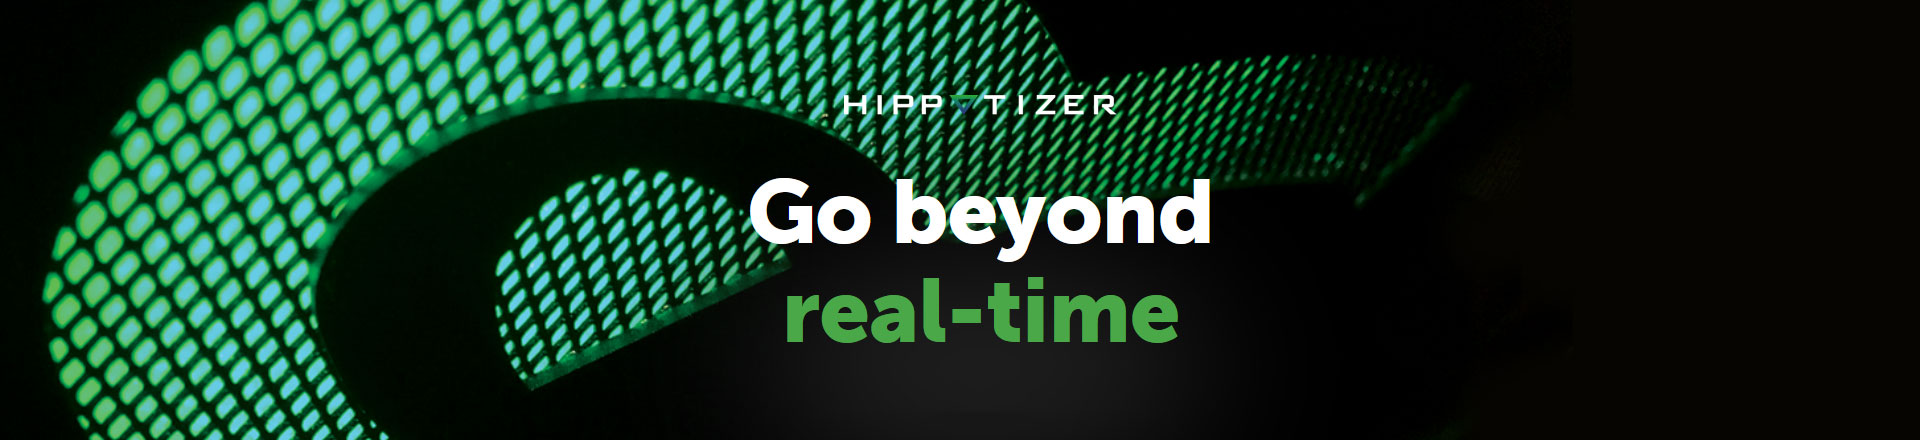 Green Hippo wydaje aktualizację oprogramowania Hippotizer